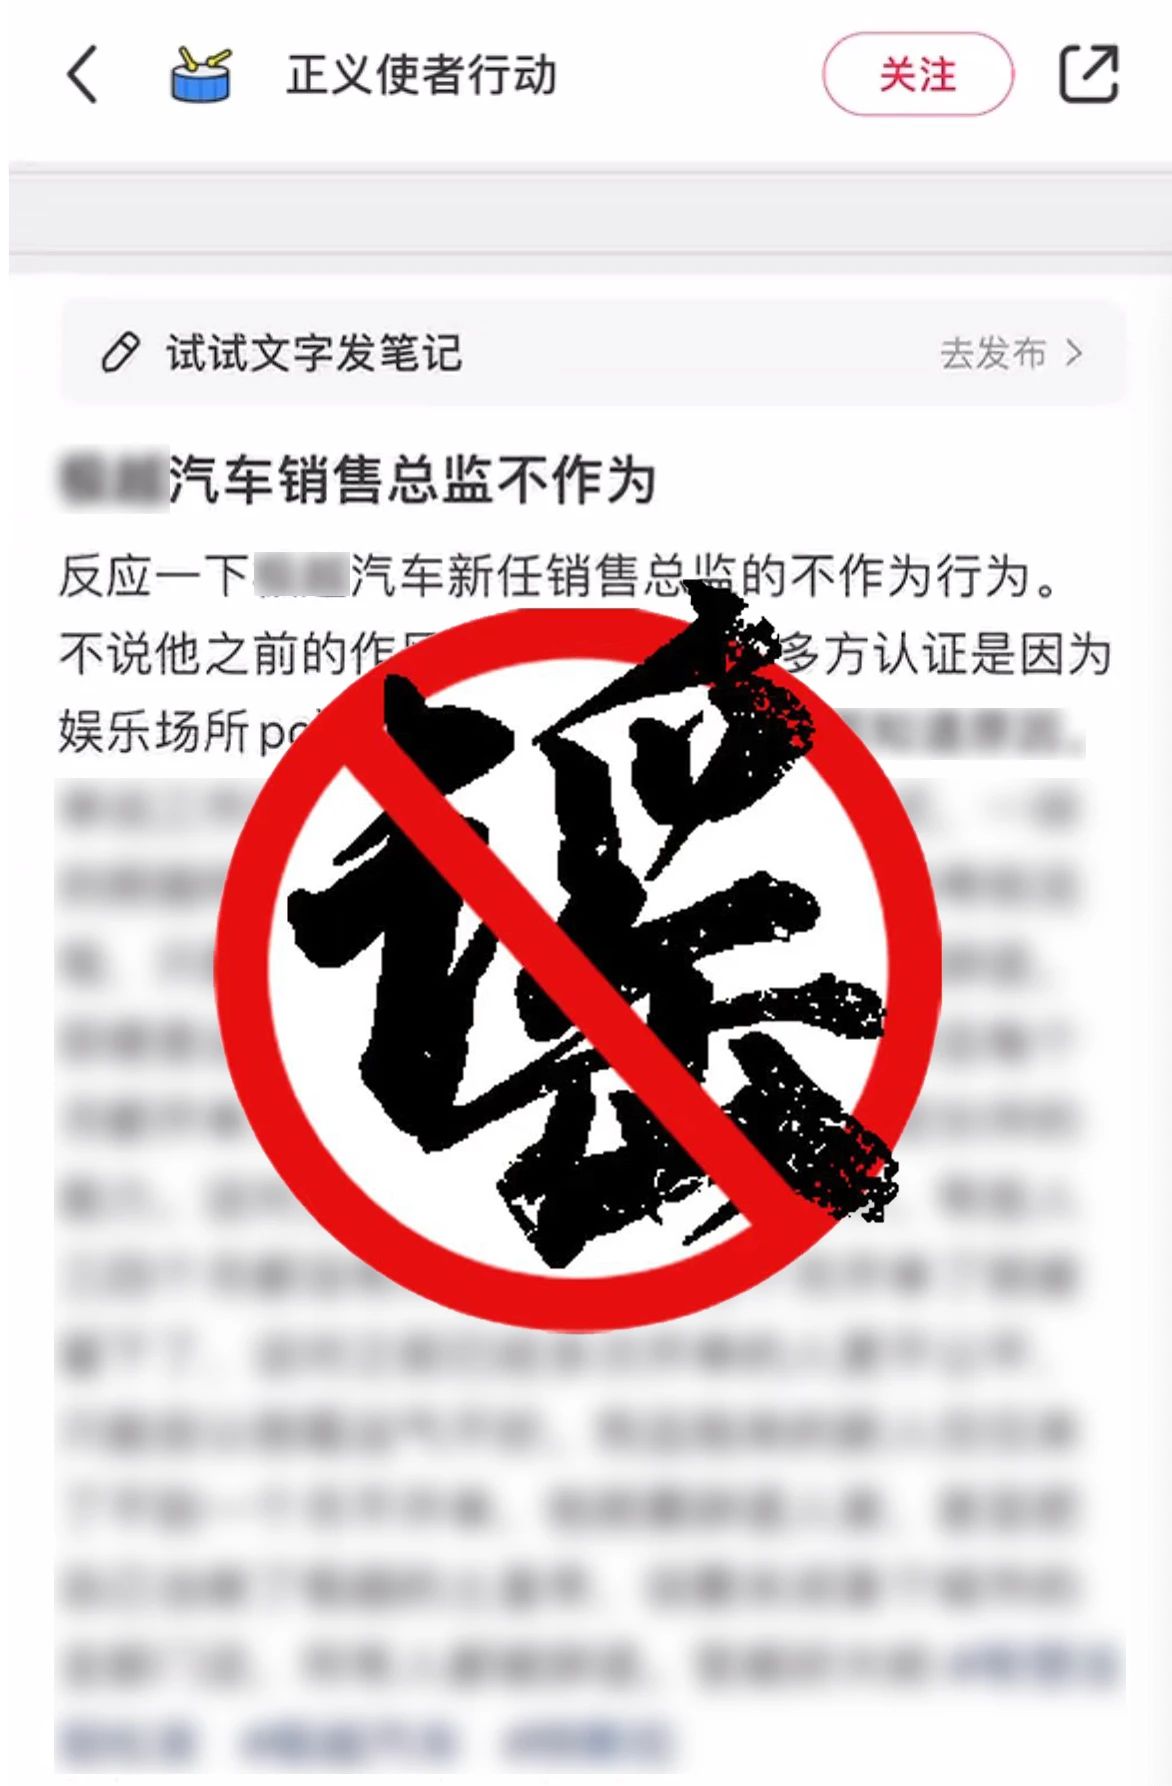 上海警方公布打击谣言典型案例